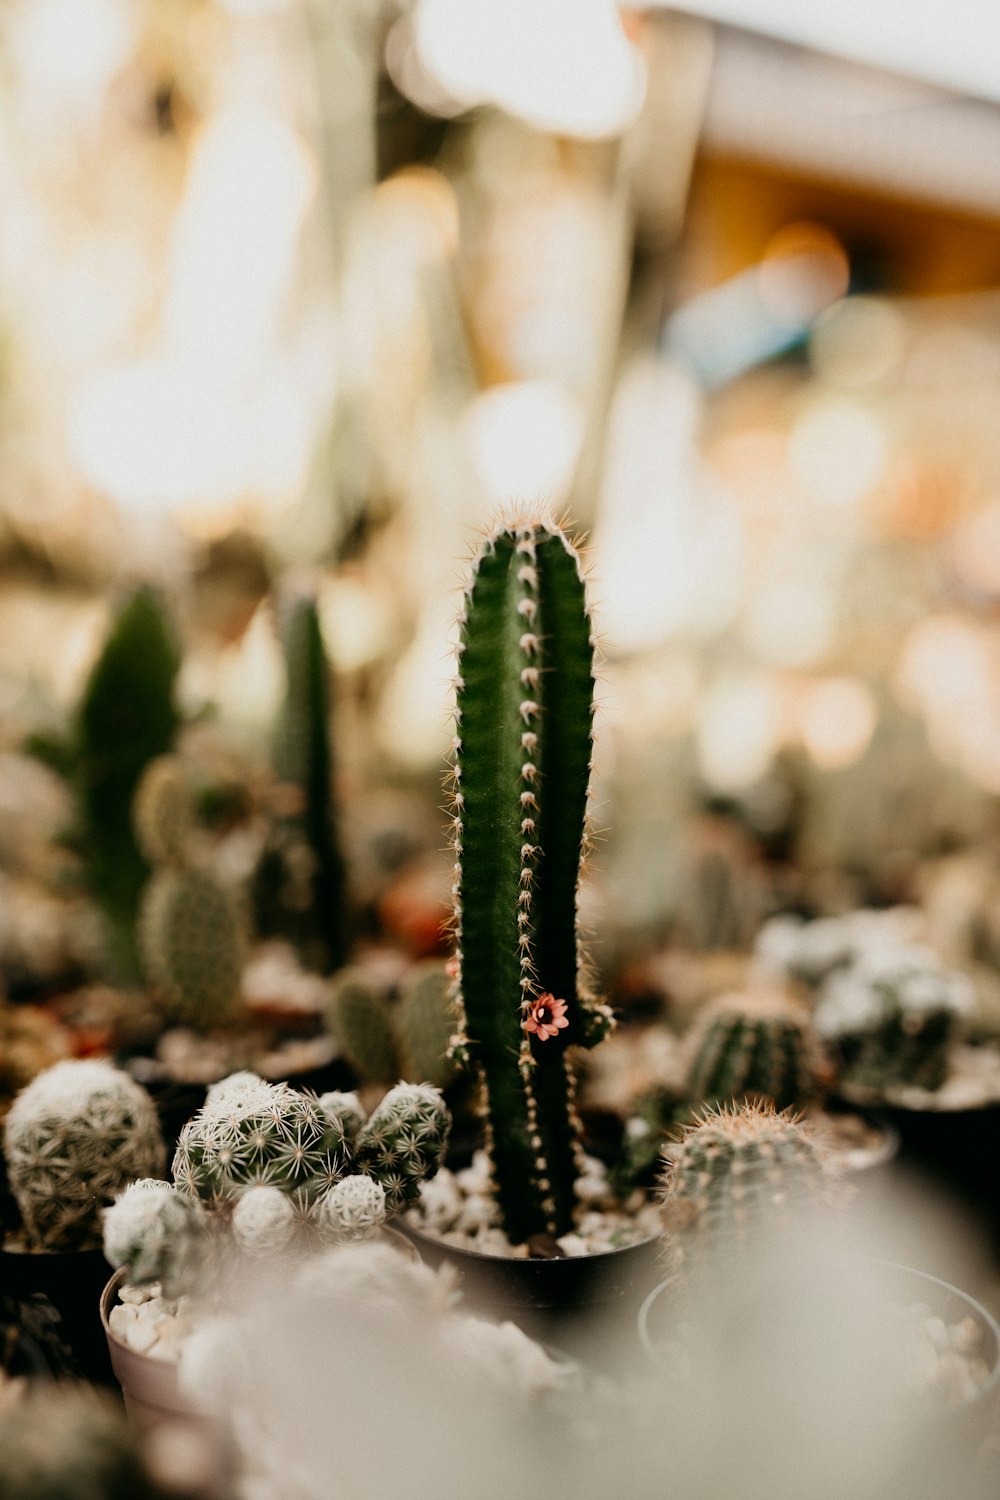 green cactus in tilt shift lens